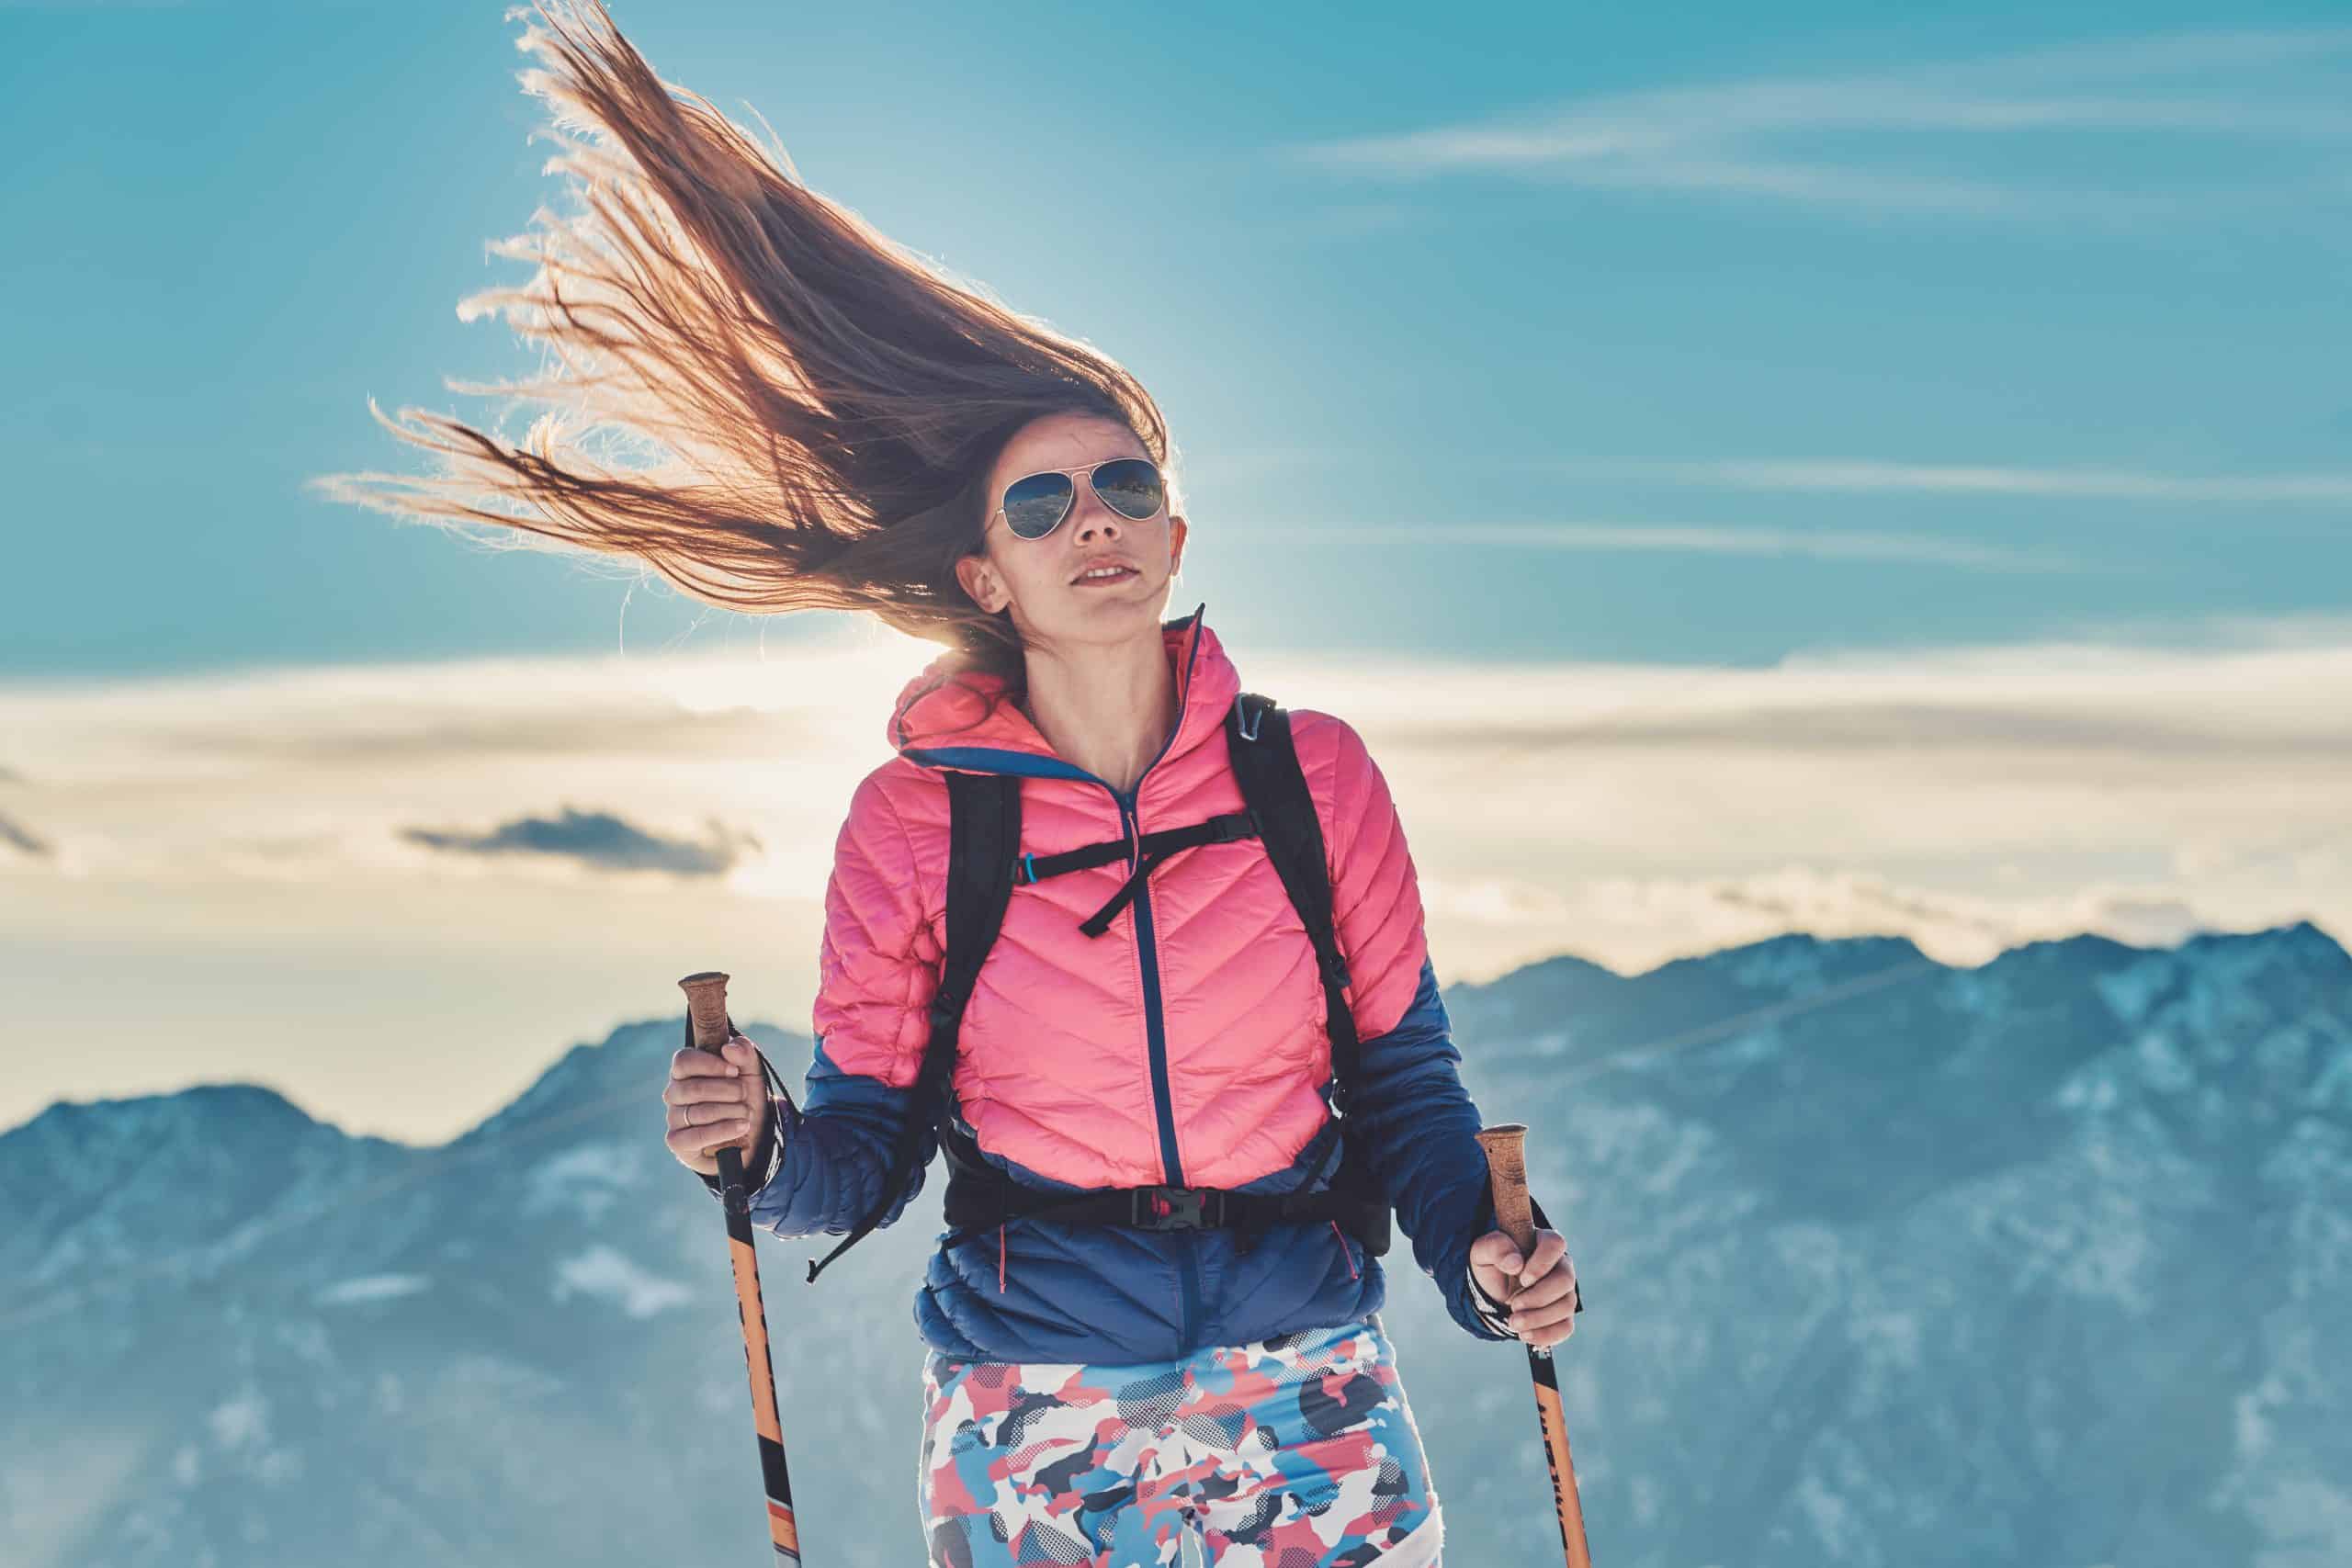 Na zdjęciu widoczna kobieta jeżdżąca na nartach, z długimi mocno rozwianymi przez wiatr włosami. Sceneria zimowa. Kadr amerykański. 